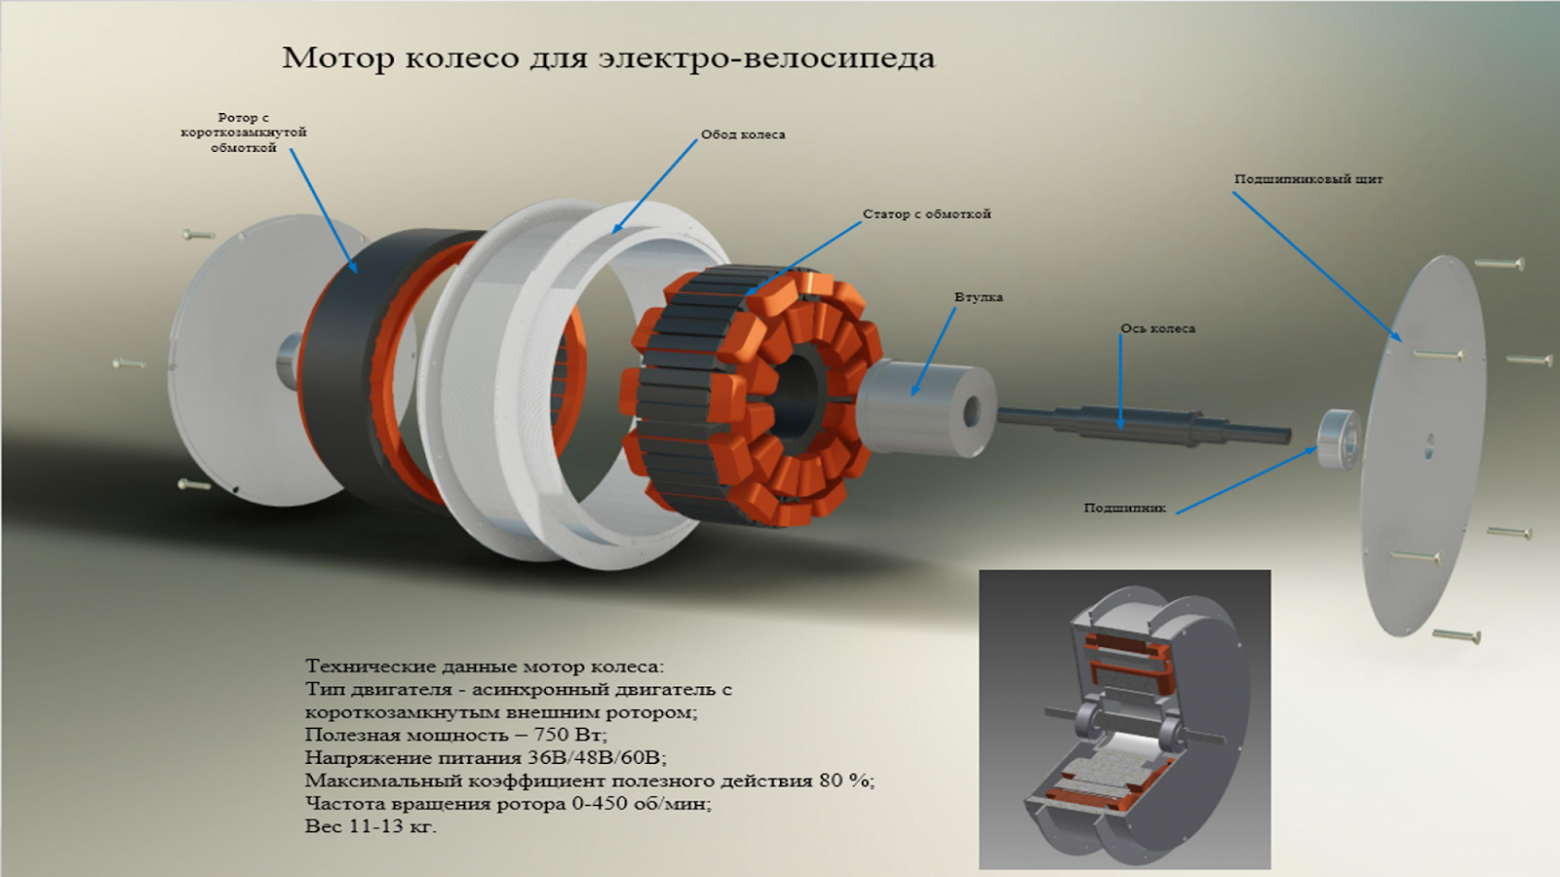 Схема асинхронного мотор-колеса с короткозамкнутым внешним ротором для электровелосипеда